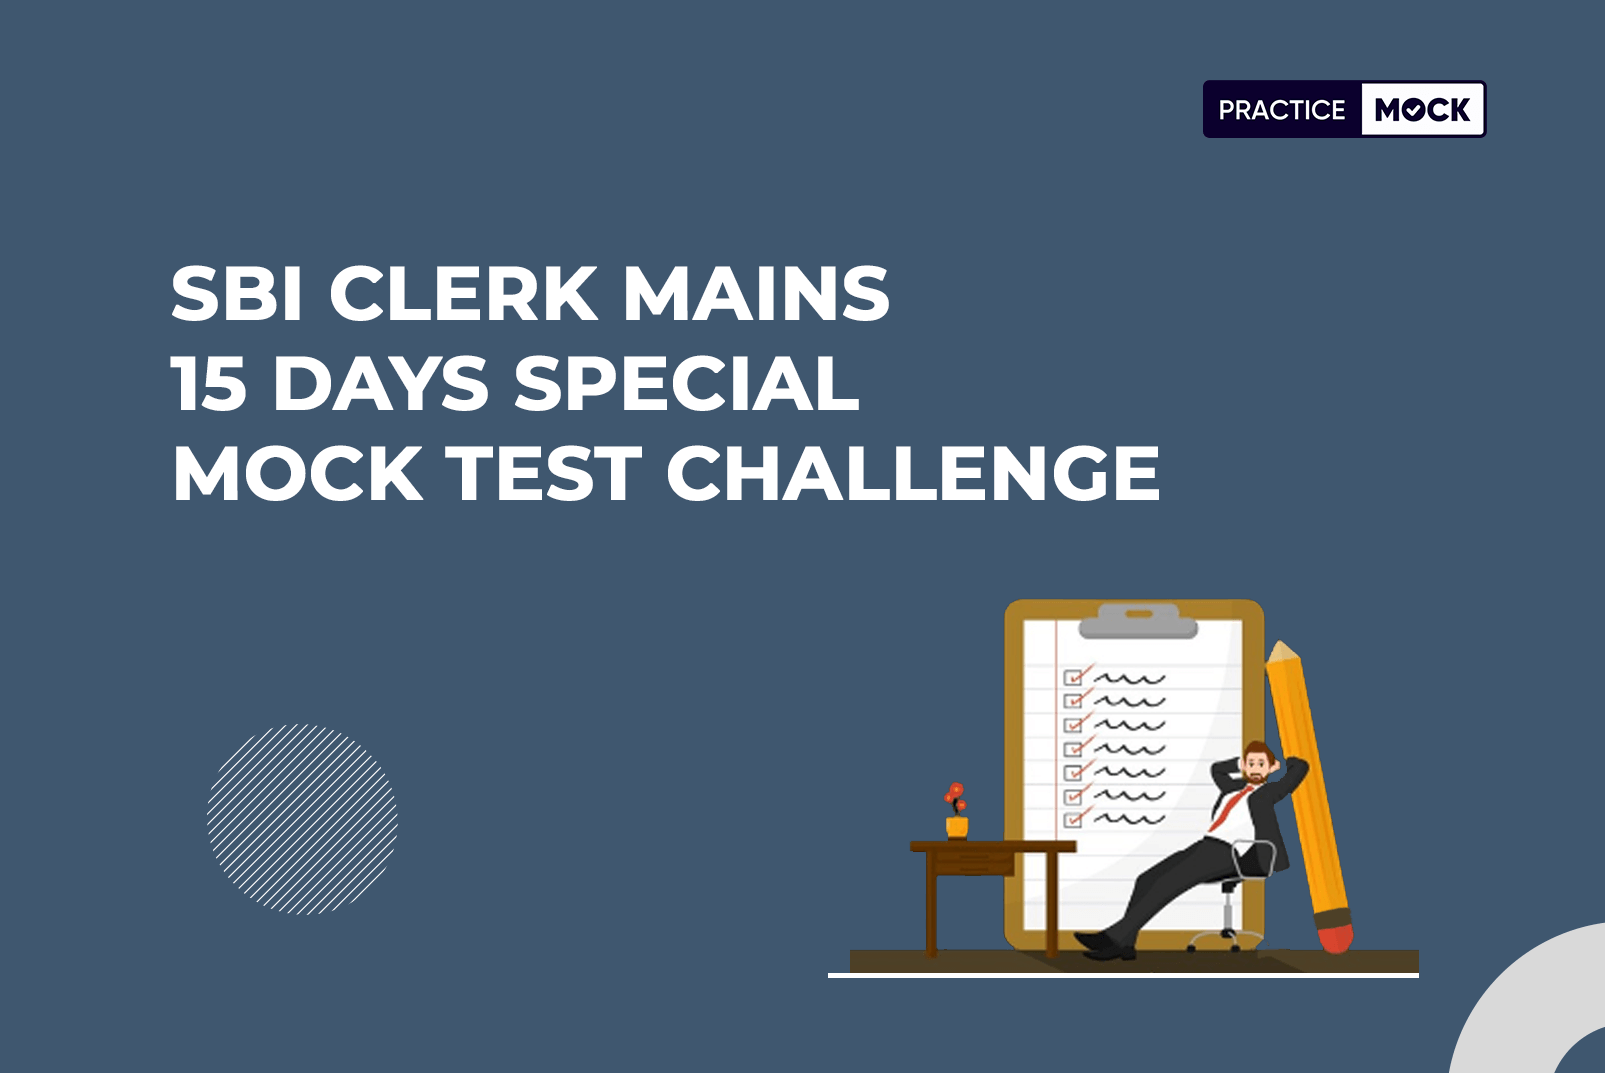 SBI Clerk Mains 15 Days Special Mock Test Challenge